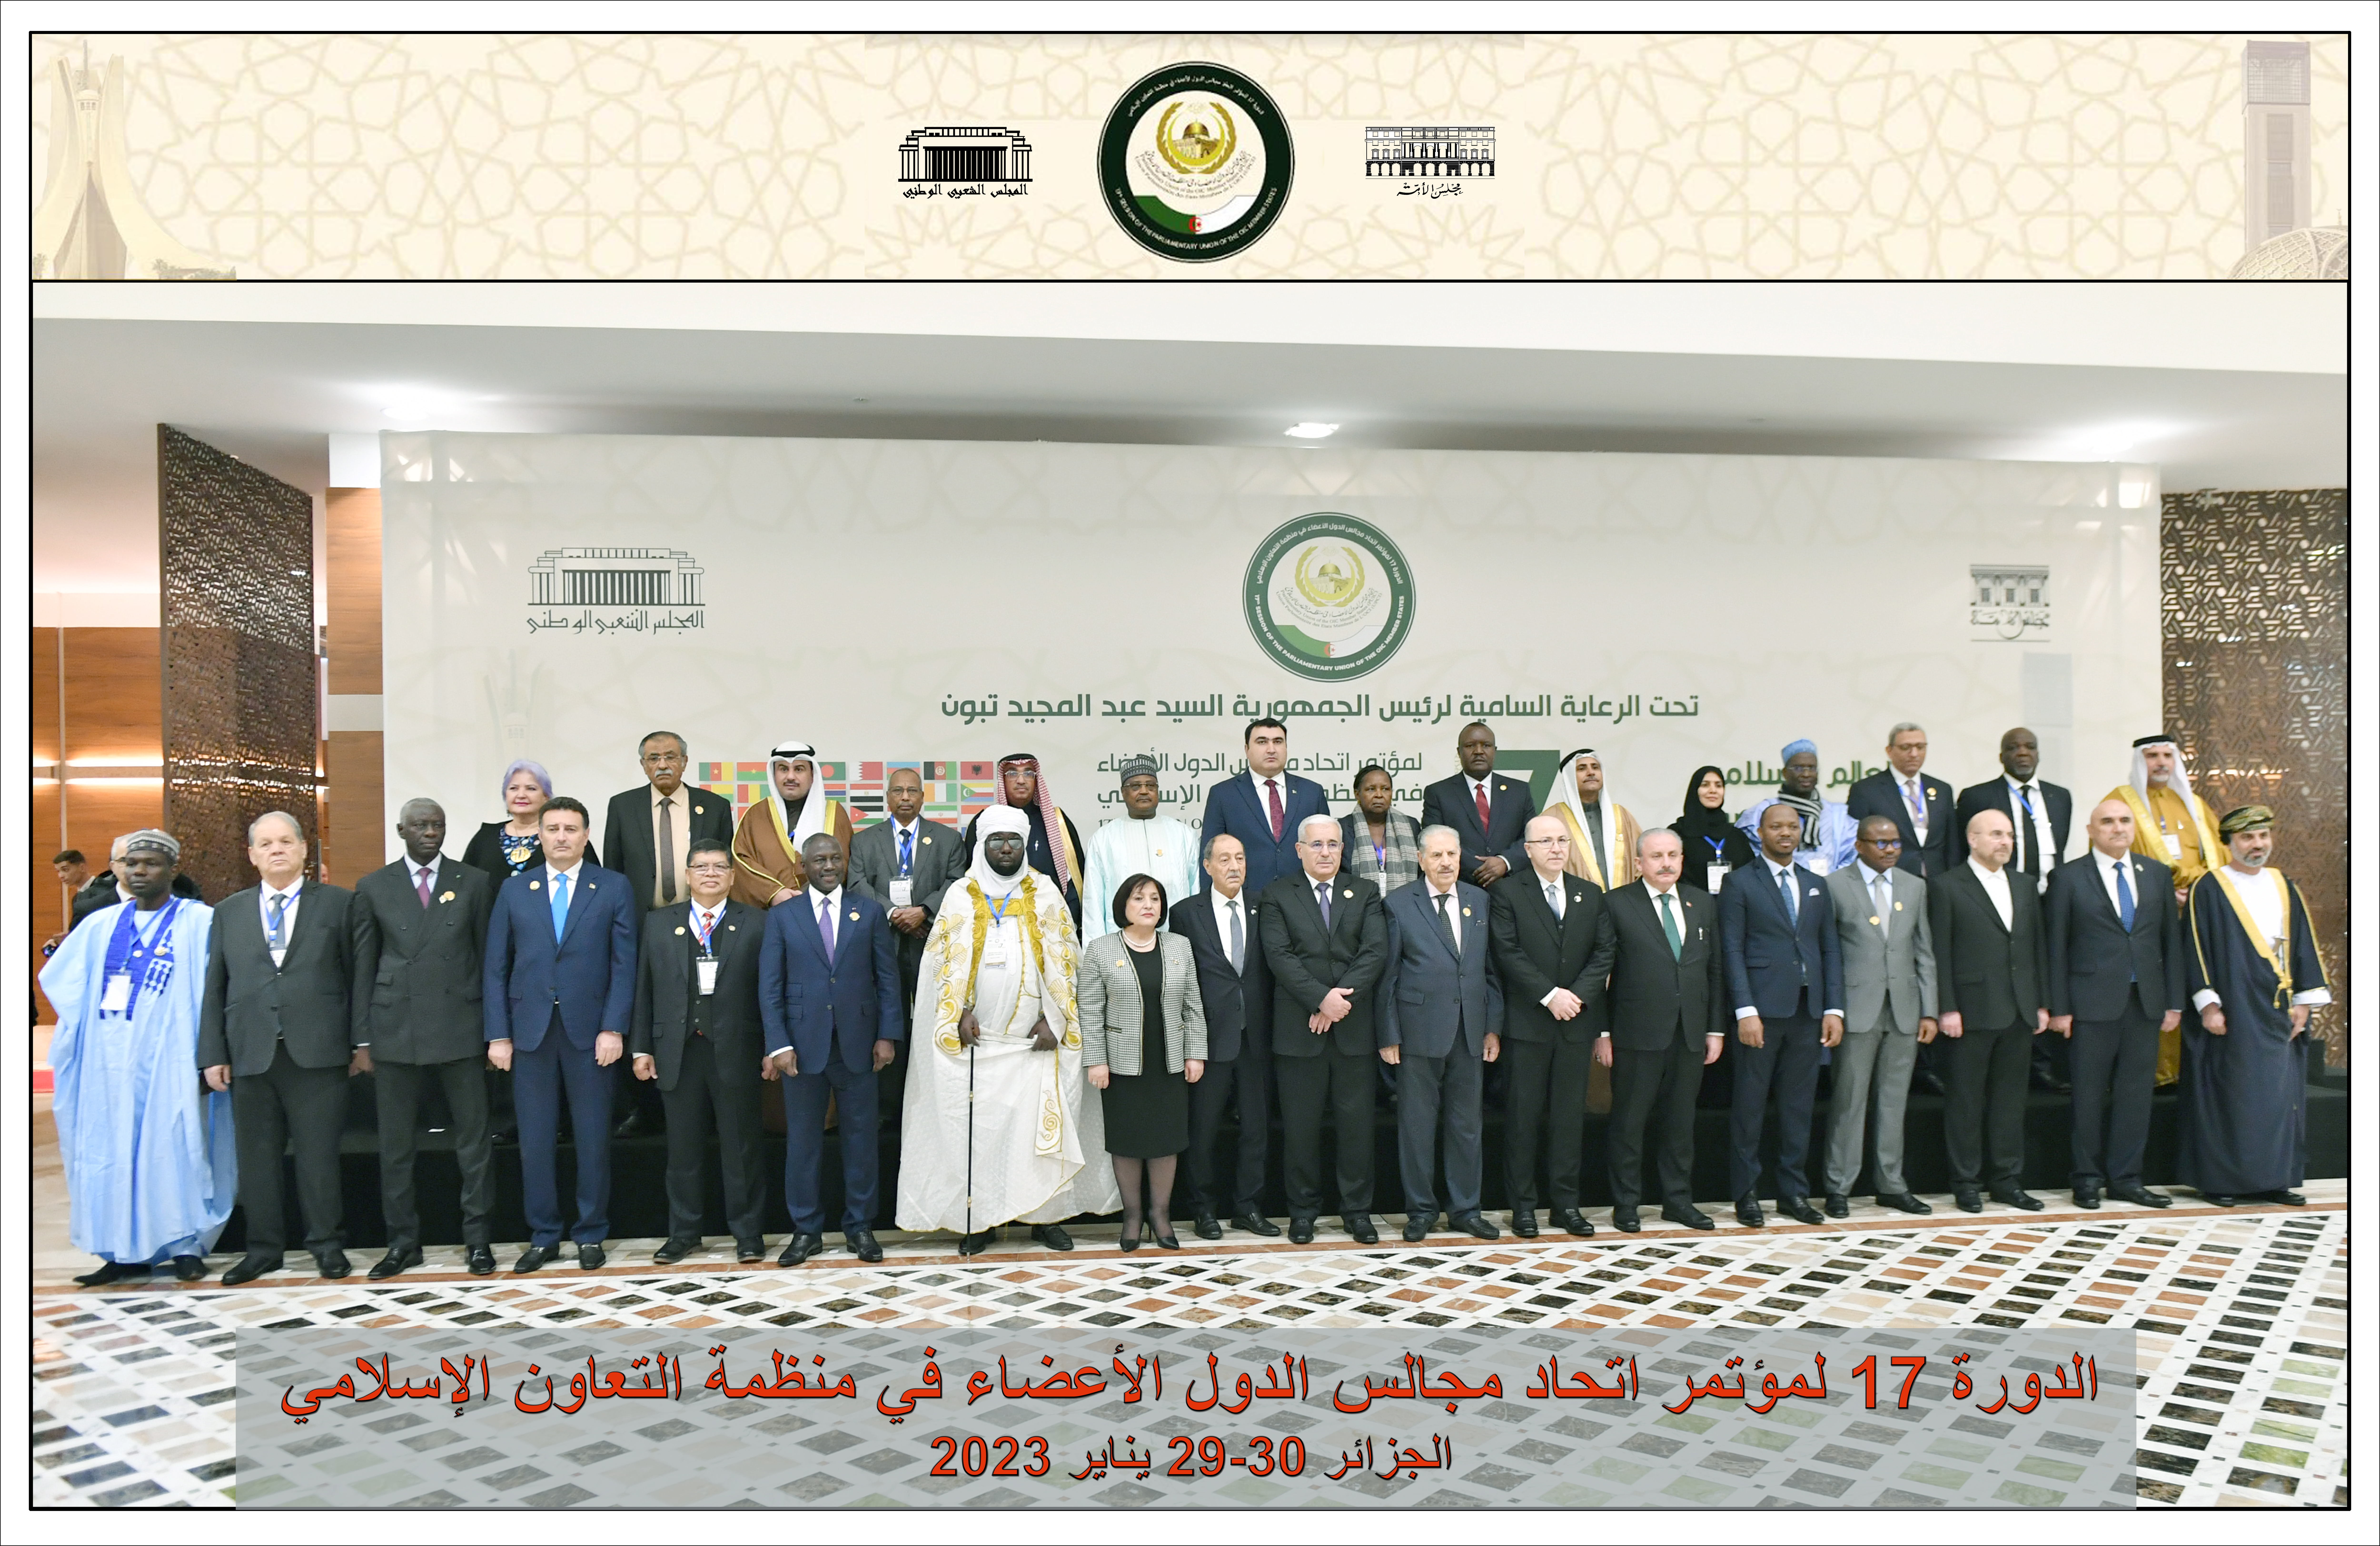 إعلان الجزائر- الدورة السابعة عشر لمؤتمر اتحاد مجالس الدول الأعضاء في منظمة التعاون الإسلامي